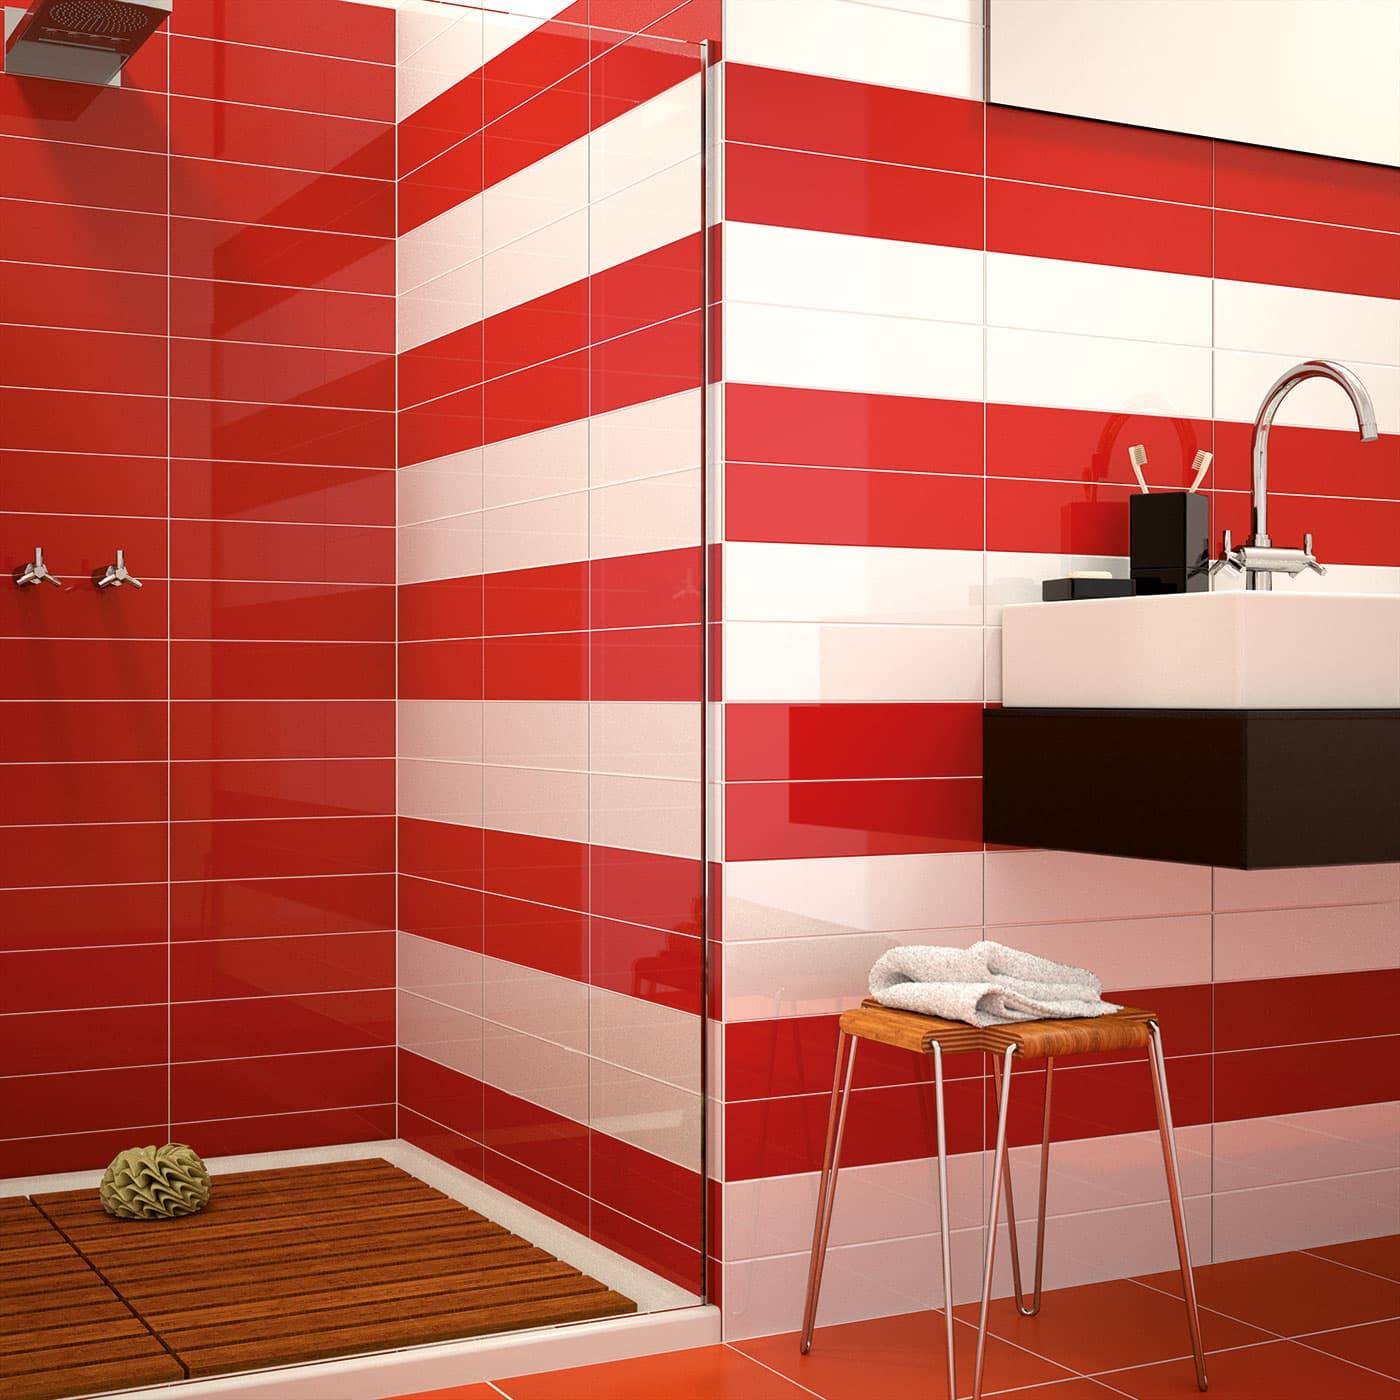 Укладка плитки в ванной plitka vanny ru. Красная плитка для ванной. Плитка для ванной красная с белым. Ванная с красной плиткой. Красный кафель в ванной.